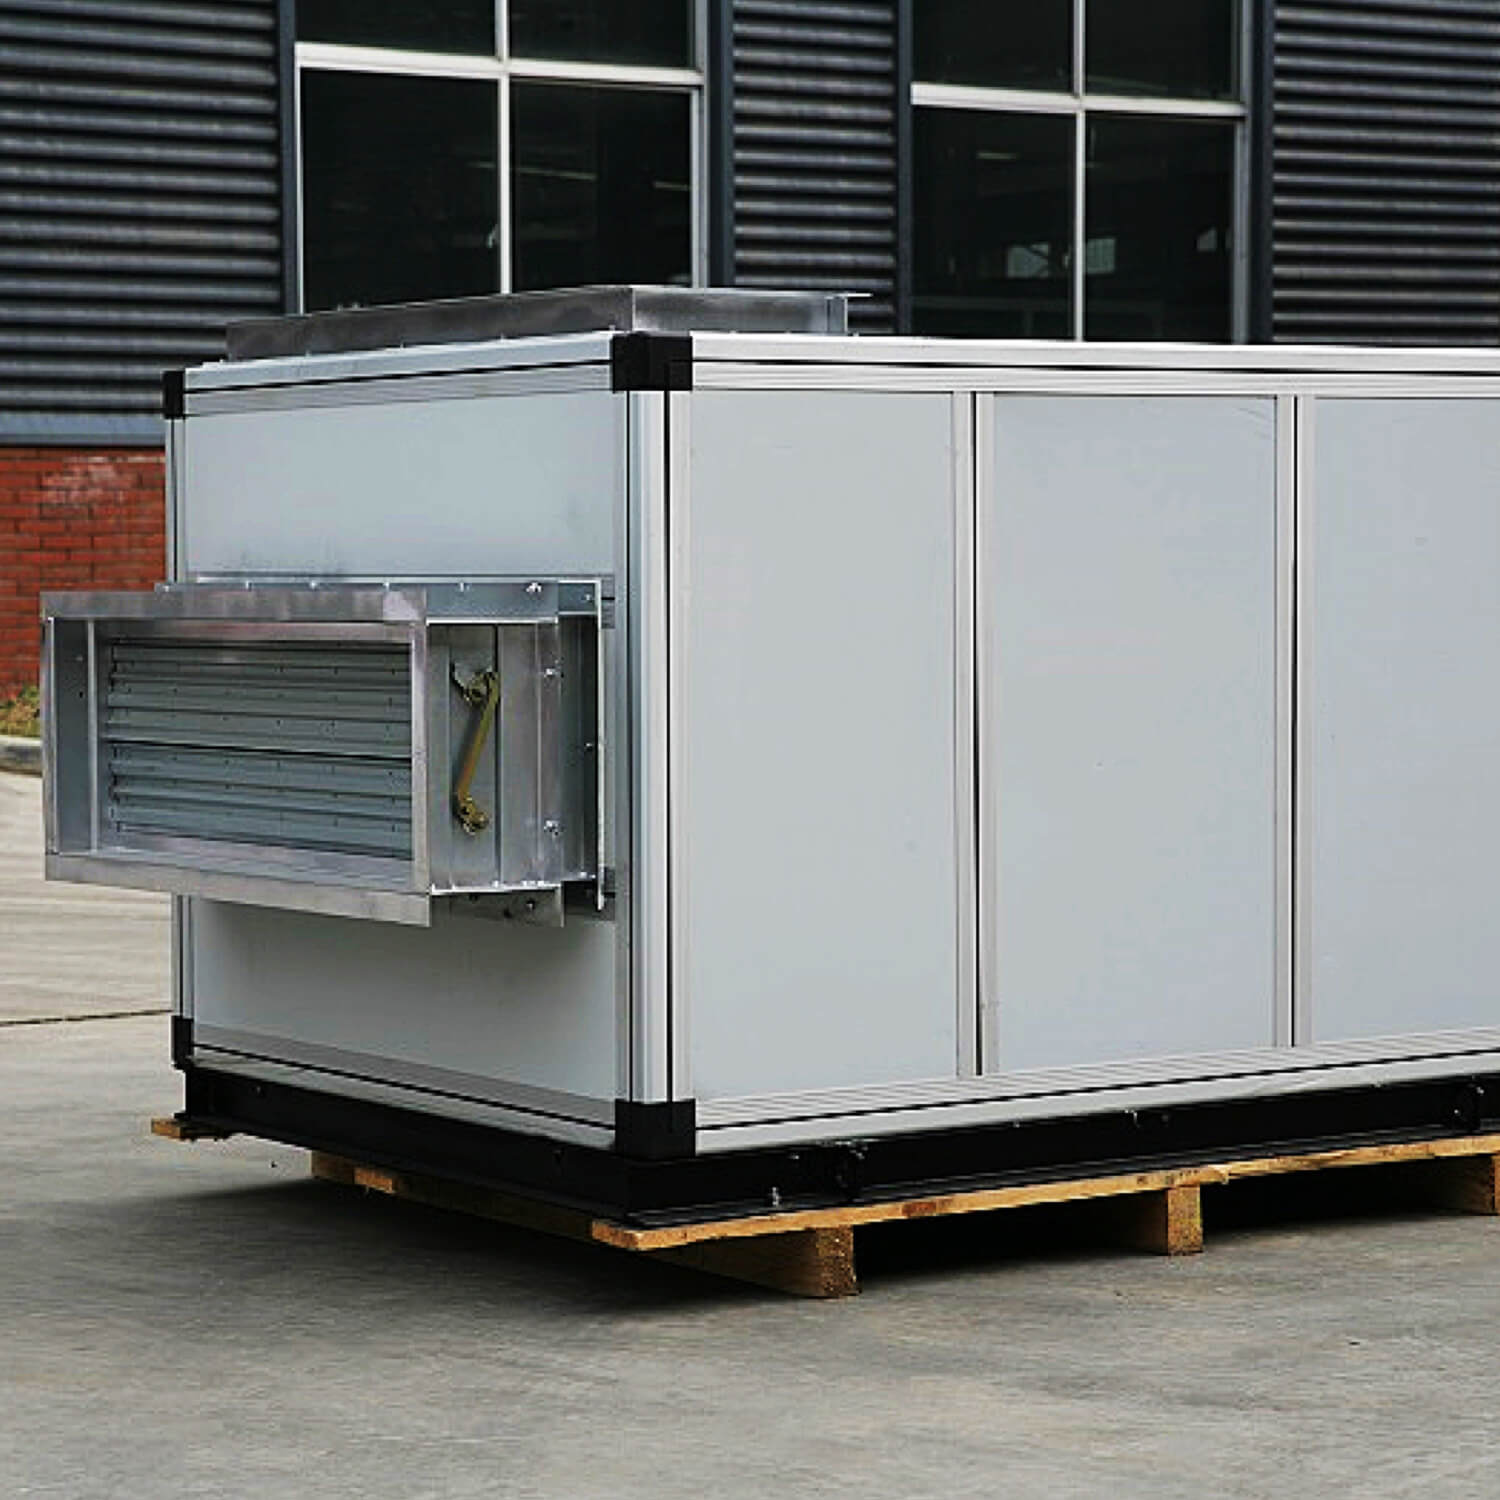 Unidades de tratamiento de aire combinadas industriales de fabricación profesional